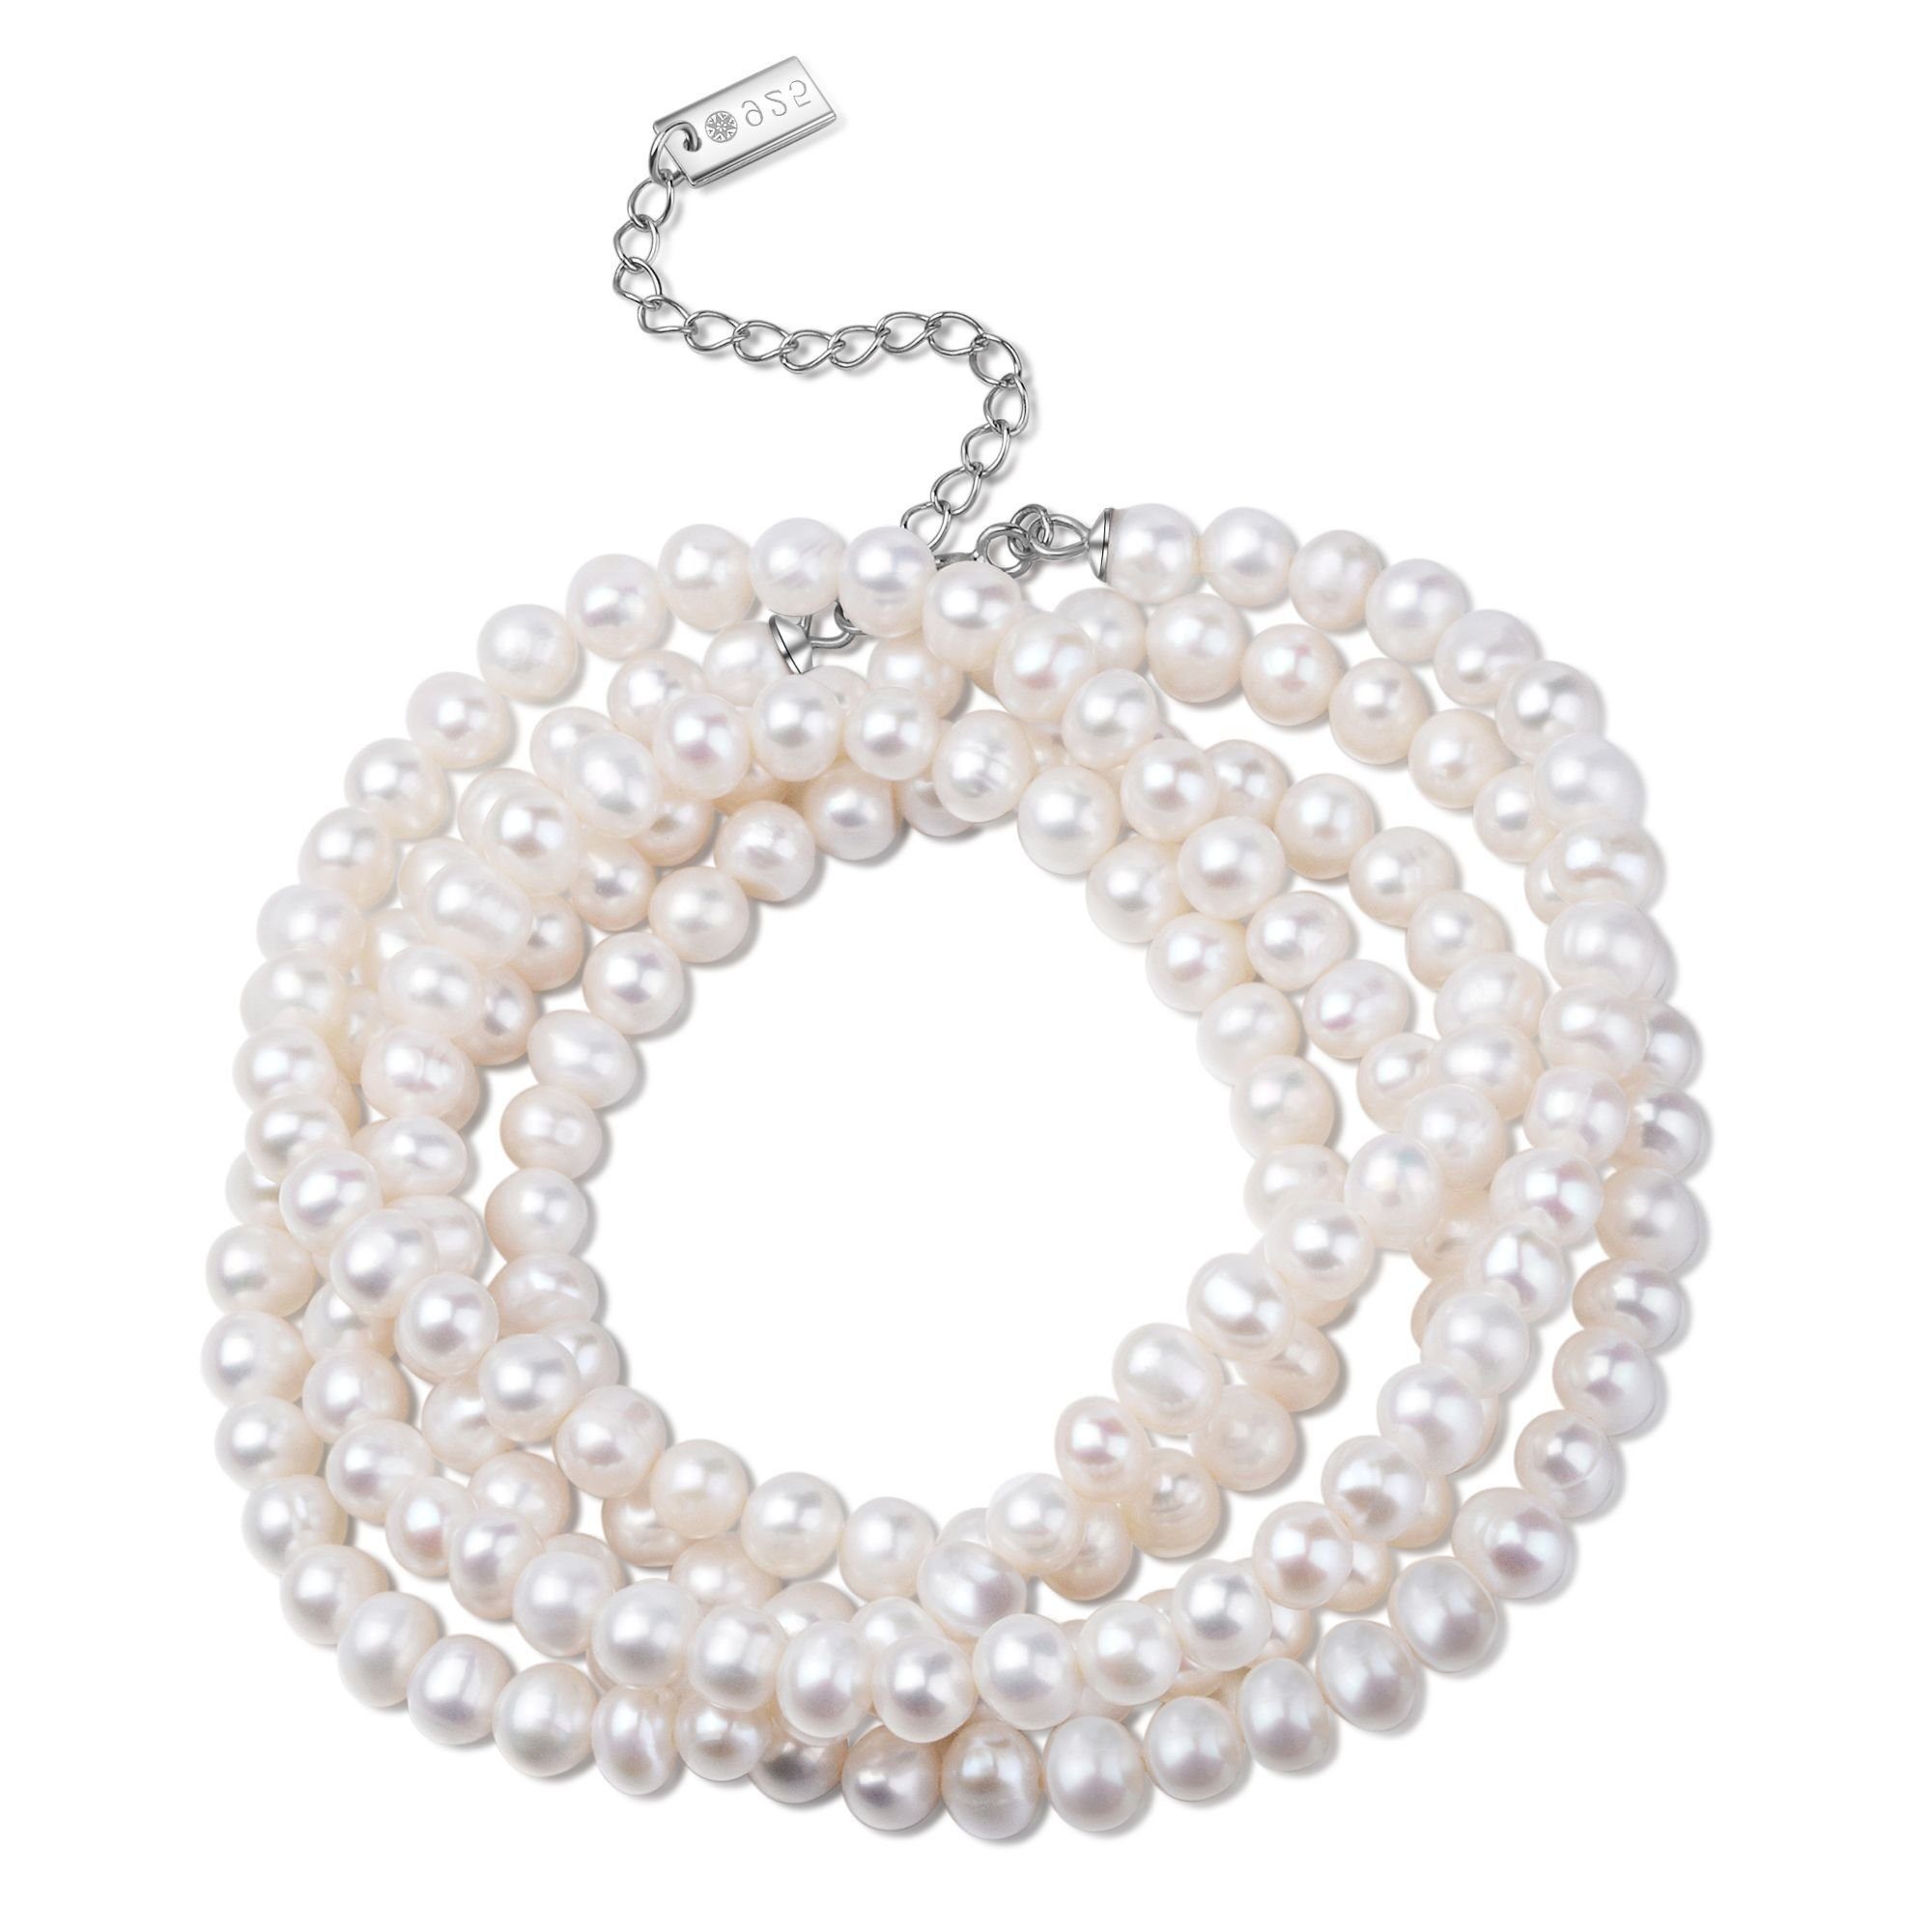 AILORIA Armband MOE armband-halskette silber/weiße perle, Armband-Halskette Silber/weiße Perle